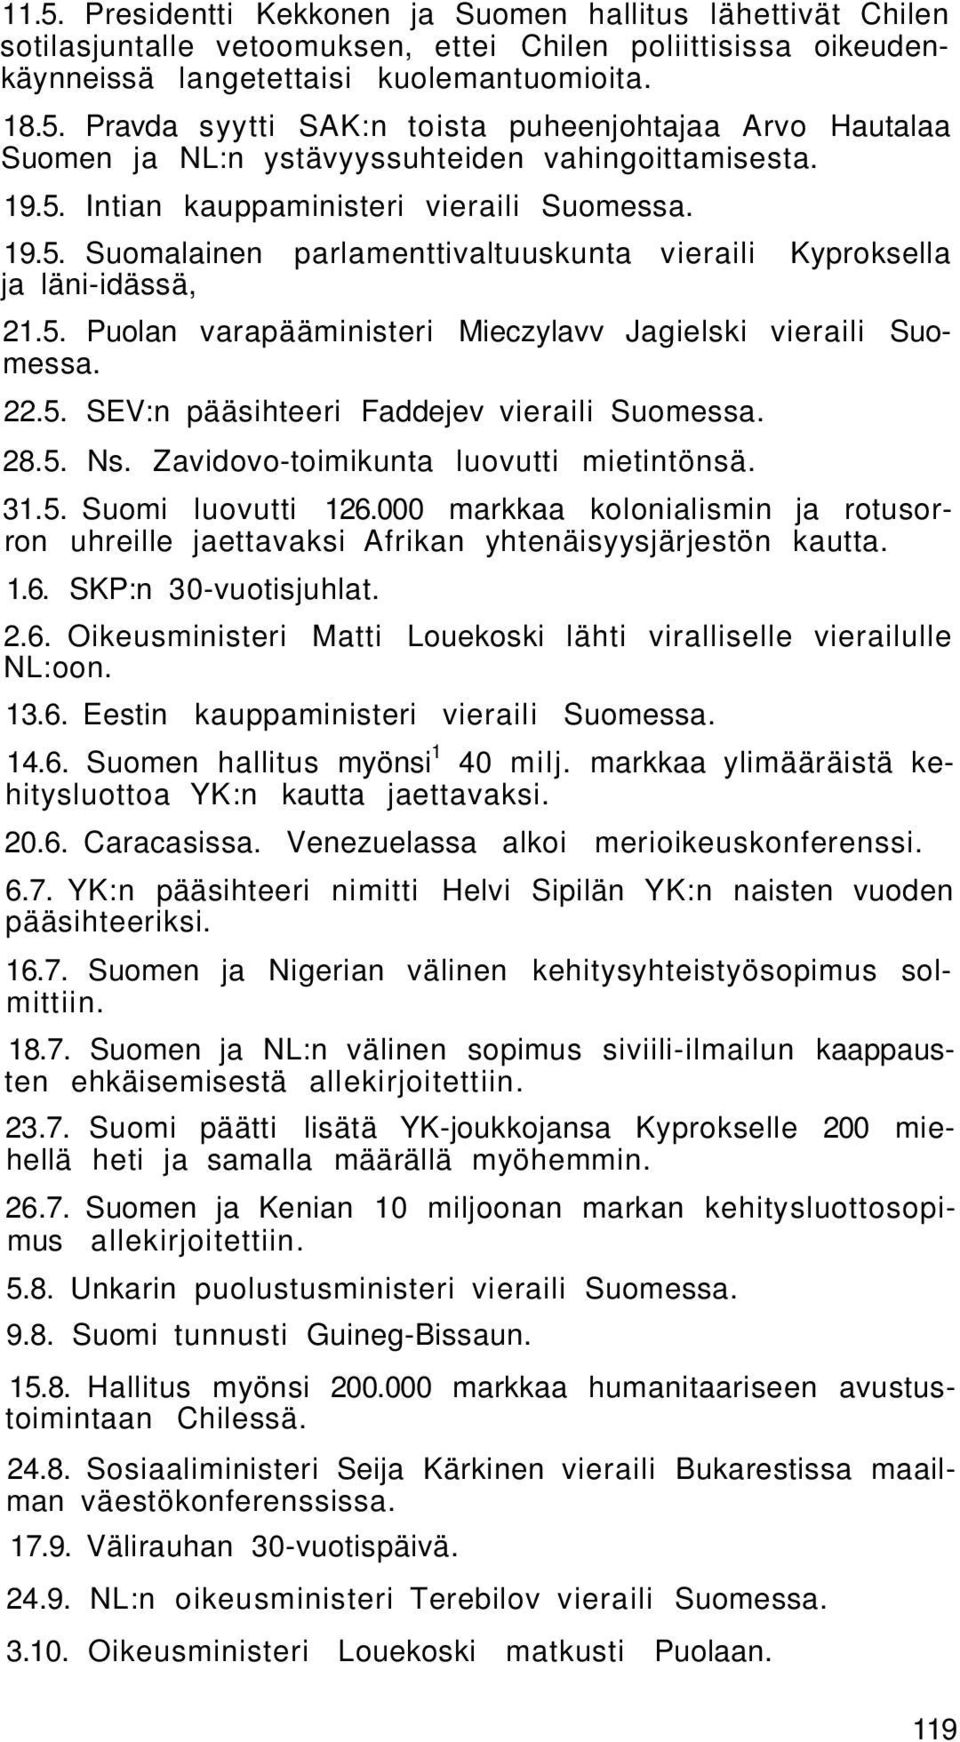 5. SEV:n pääsihteeri Faddejev vieraili Suomessa. 28.5. Ns. Zavidovo-toimikunta luovutti mietintönsä. 31.5. Suomi luovutti 126.